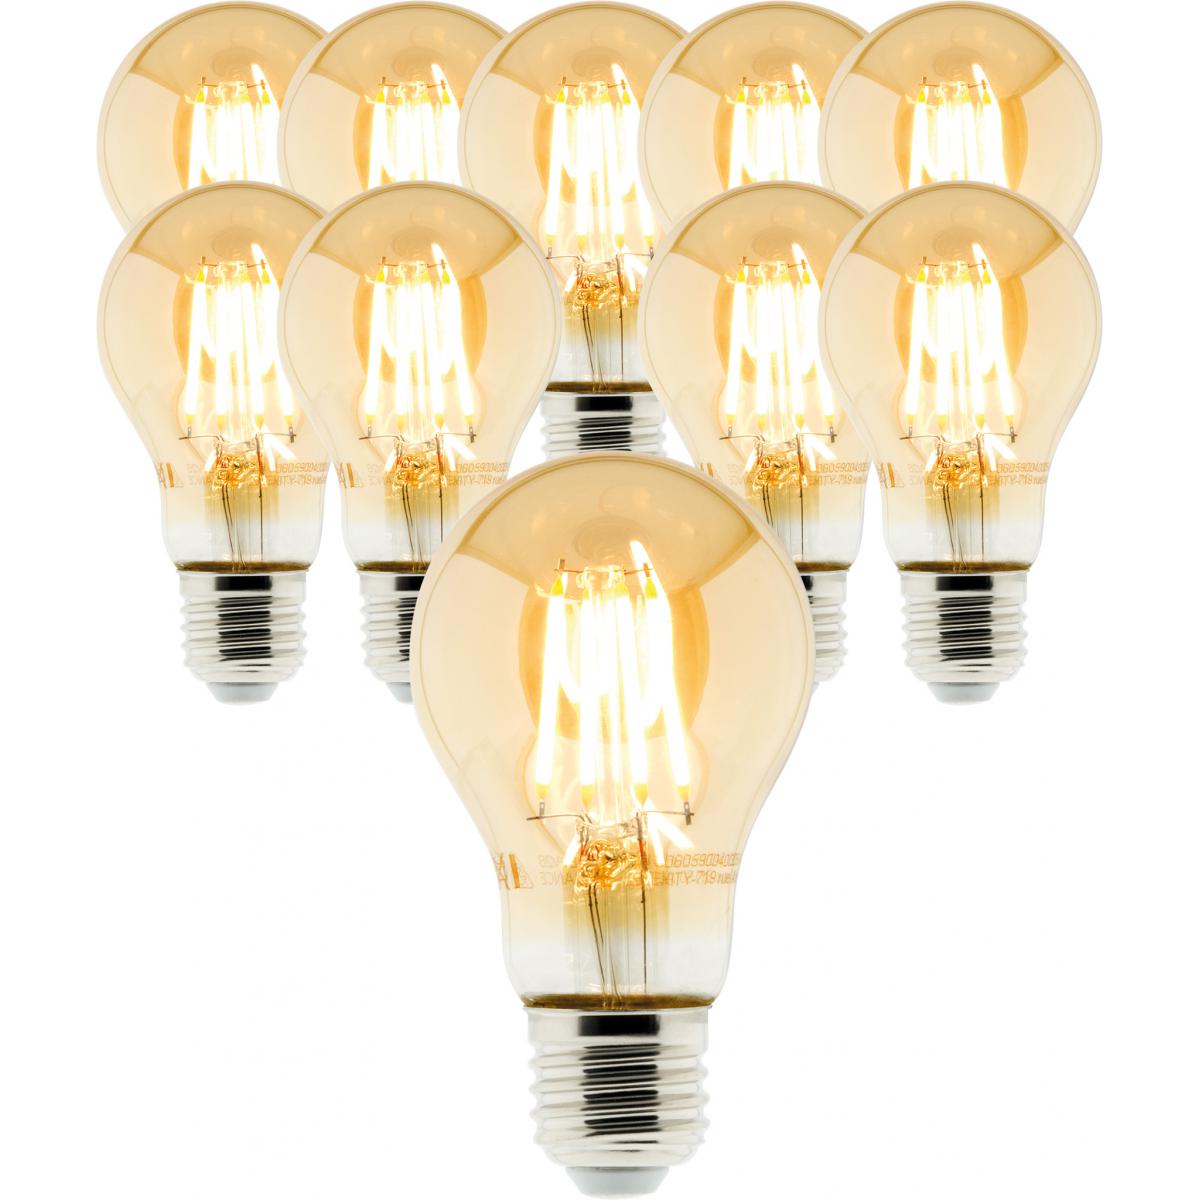 Elexity - Lot de 10 ampoules Déco filament LED ambrée Standard 4W E27 400lm 2500K - Ampoules LED